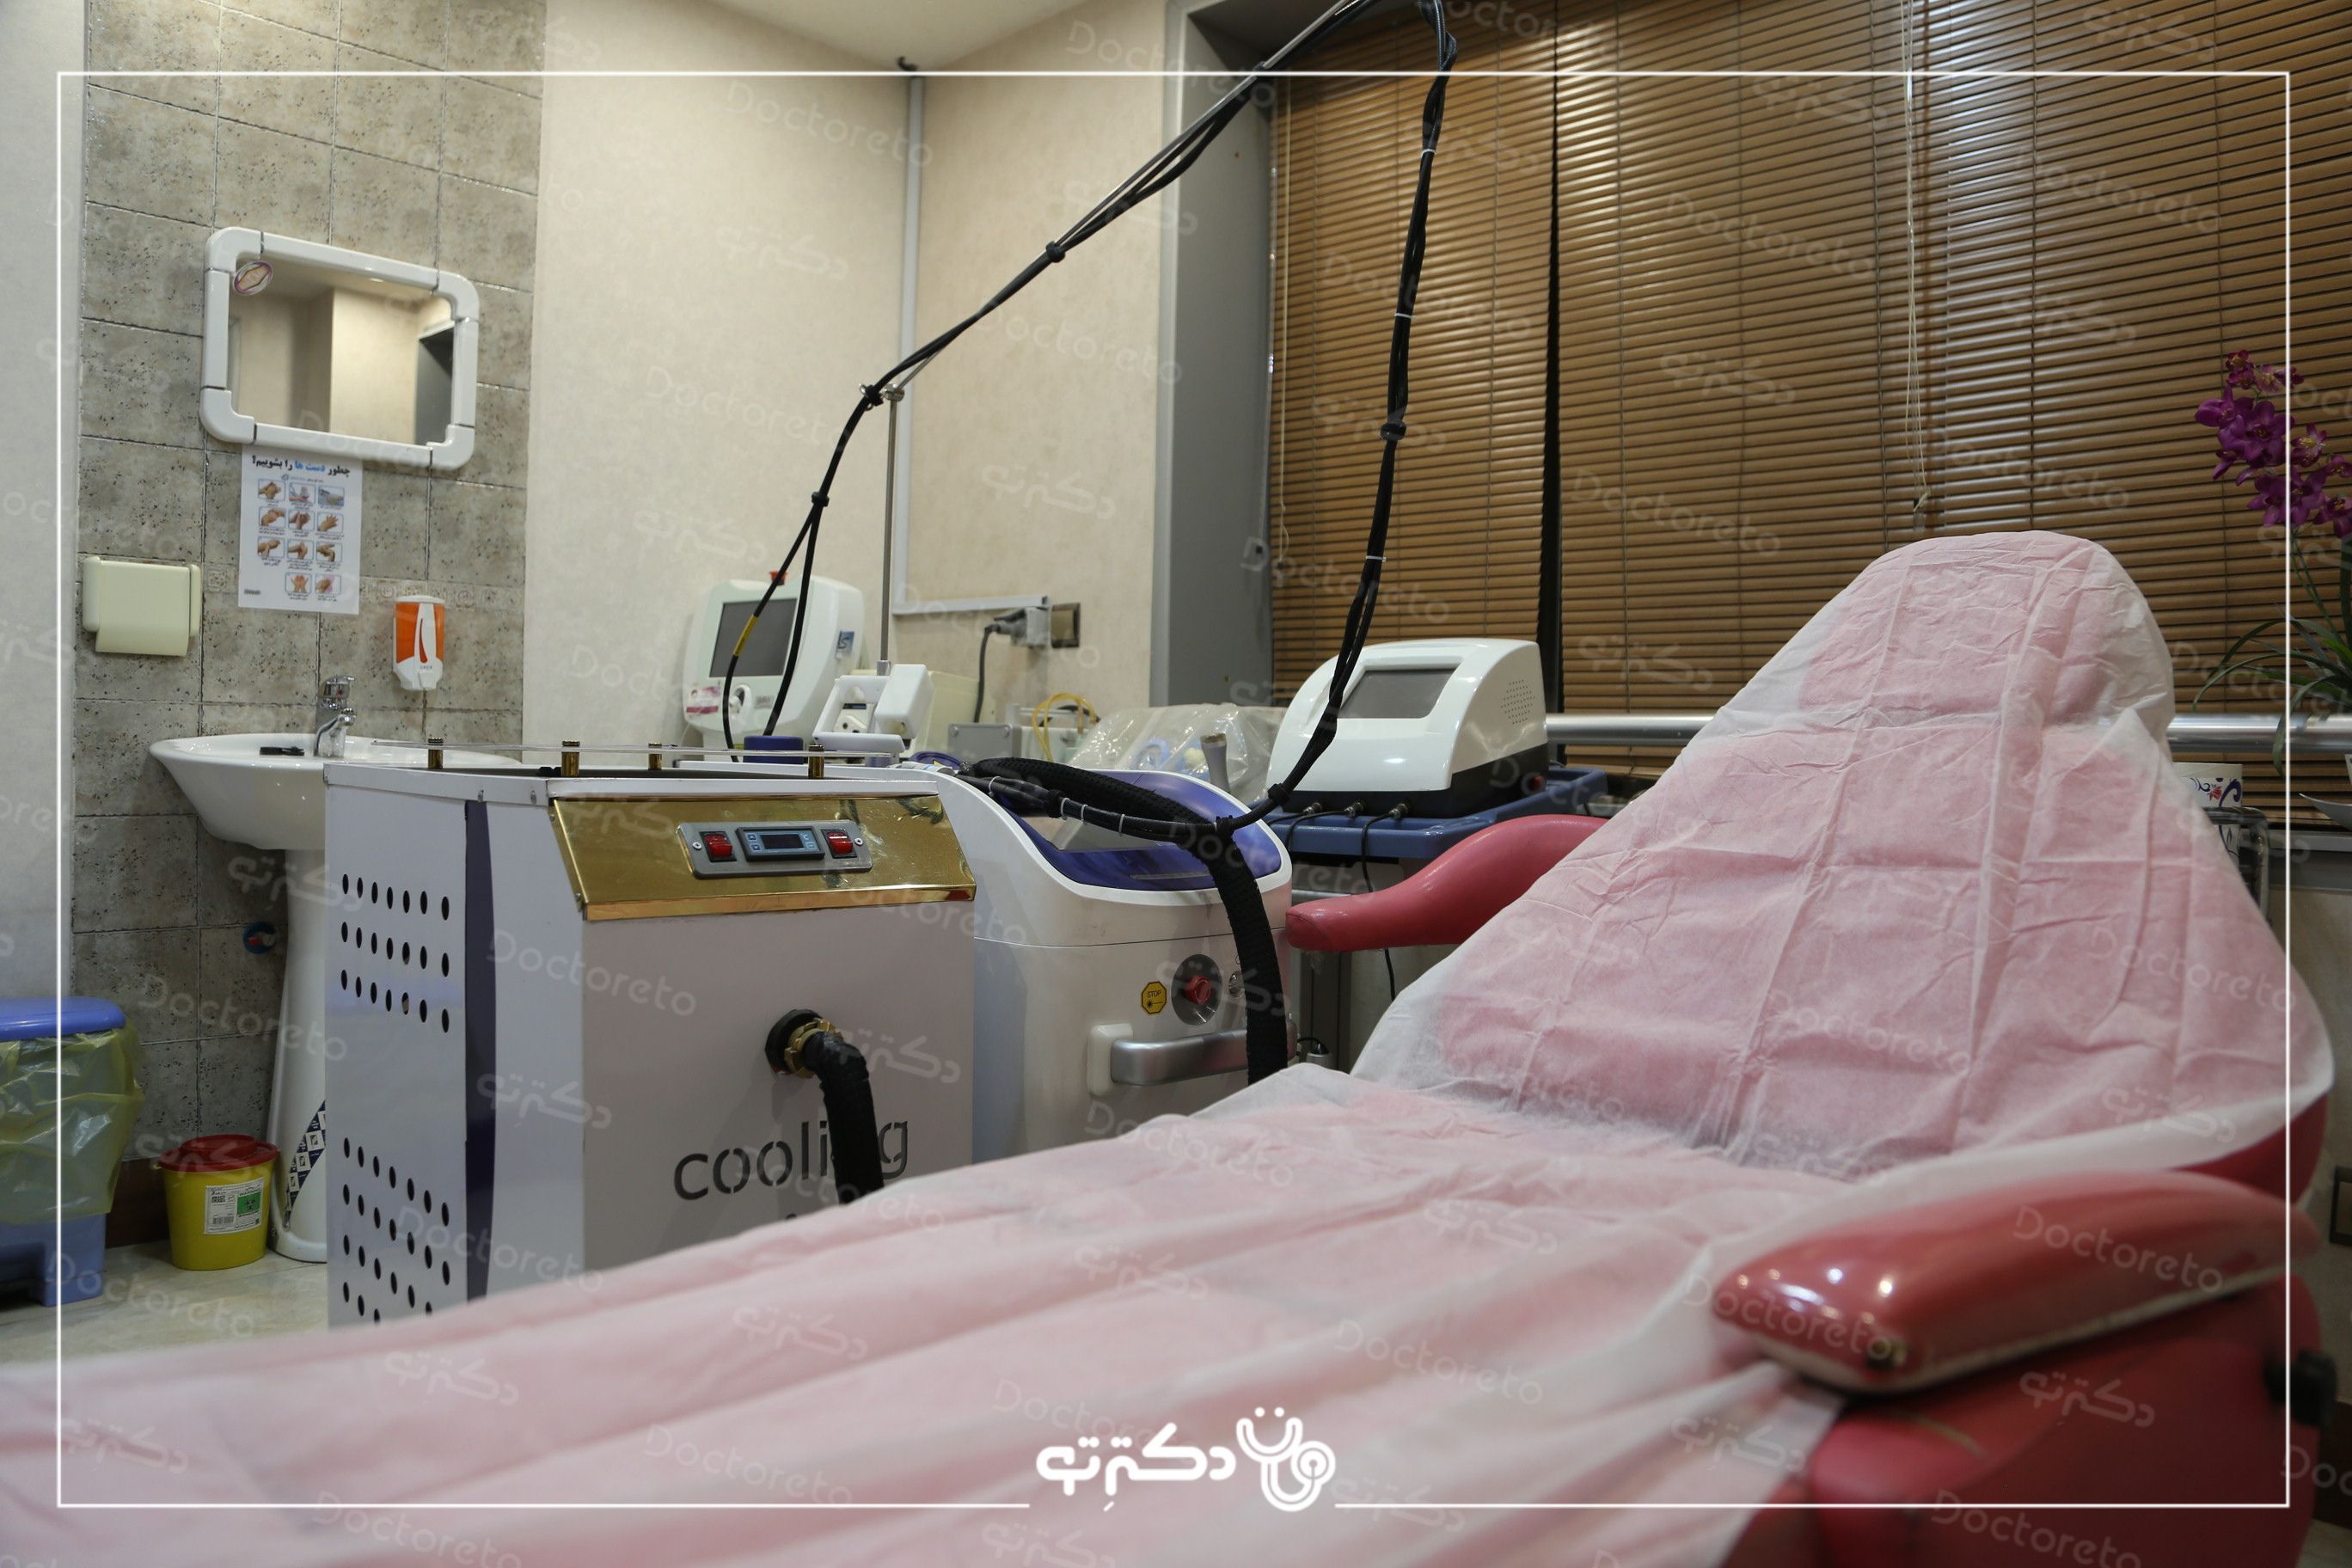 حذف تتو بدن با استفاده از دستگاه لیزر کیوسوییچ (هر5 سانت) دکتر محسن سلیمانی در اصفهان 9